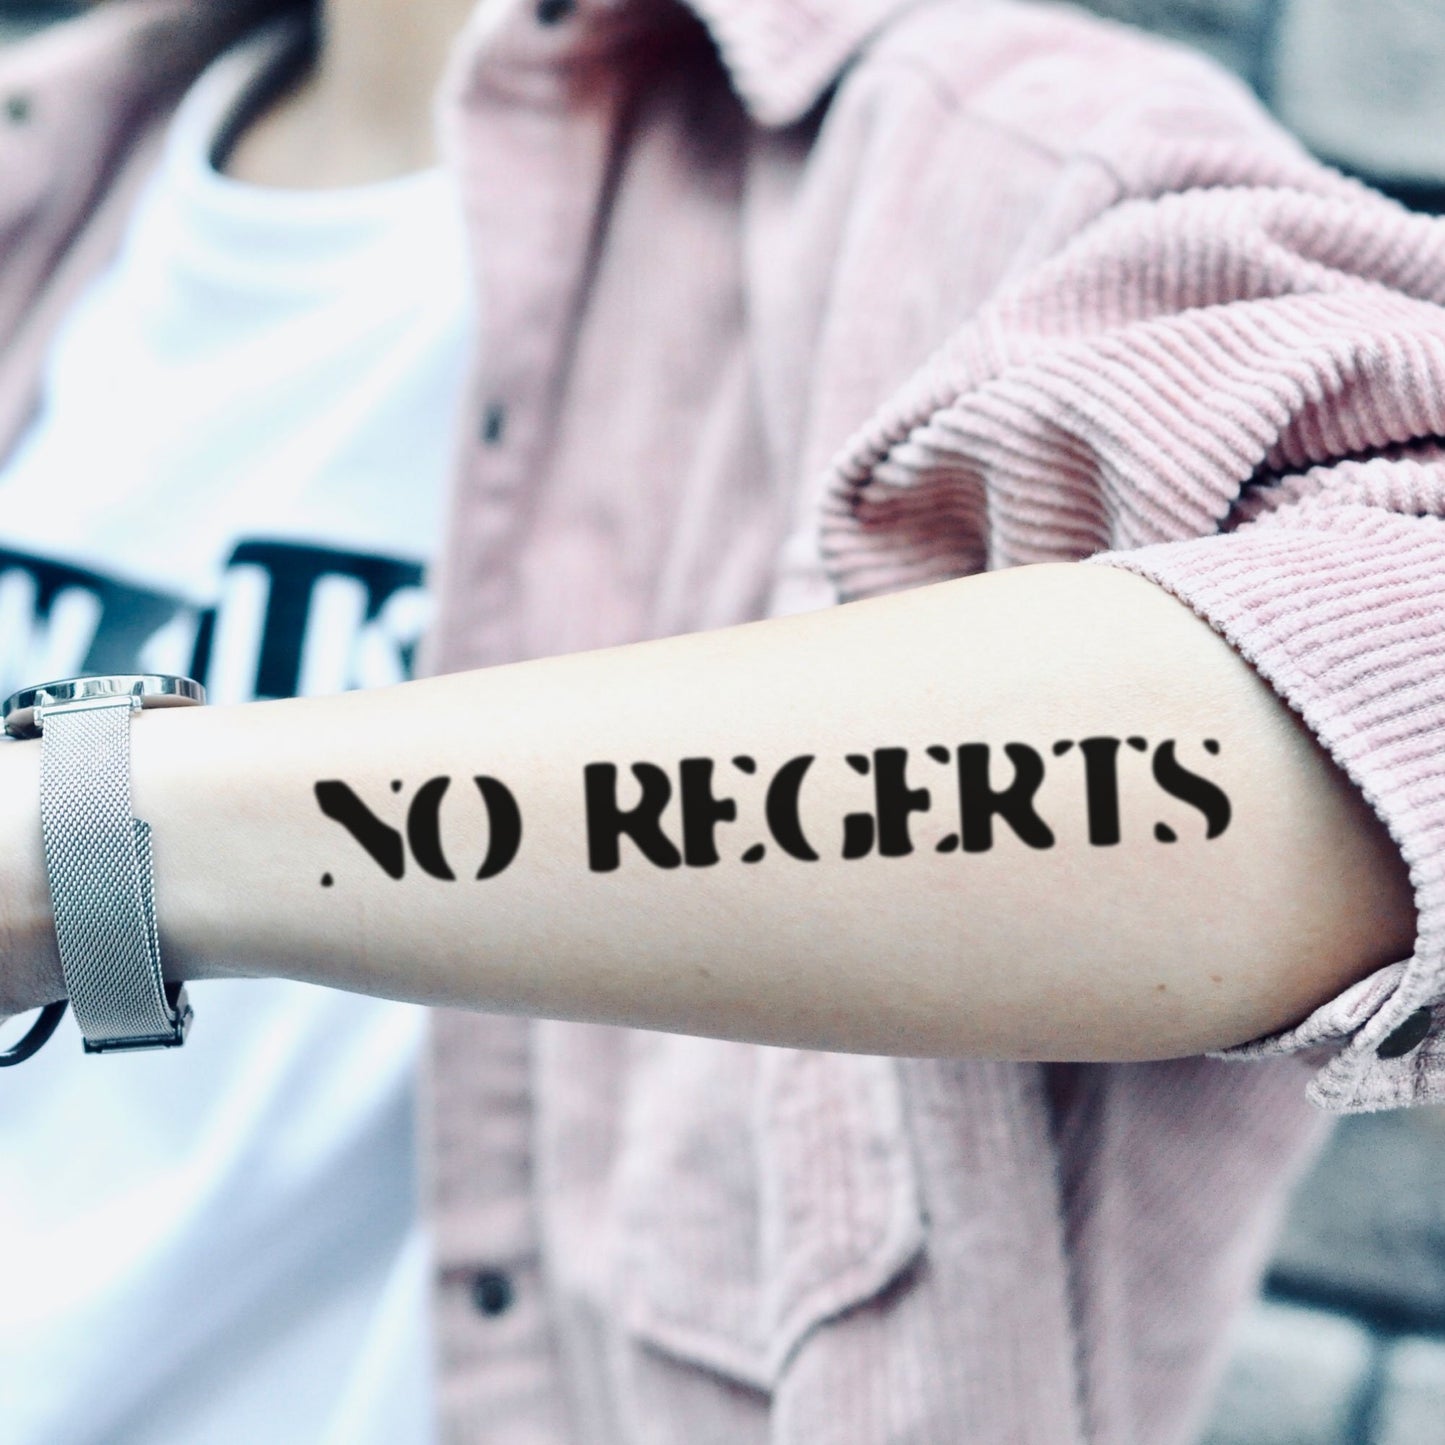 fake medium no regerts regrets shameless misspelled lettering temporary tattoo sticker design idea on forearm